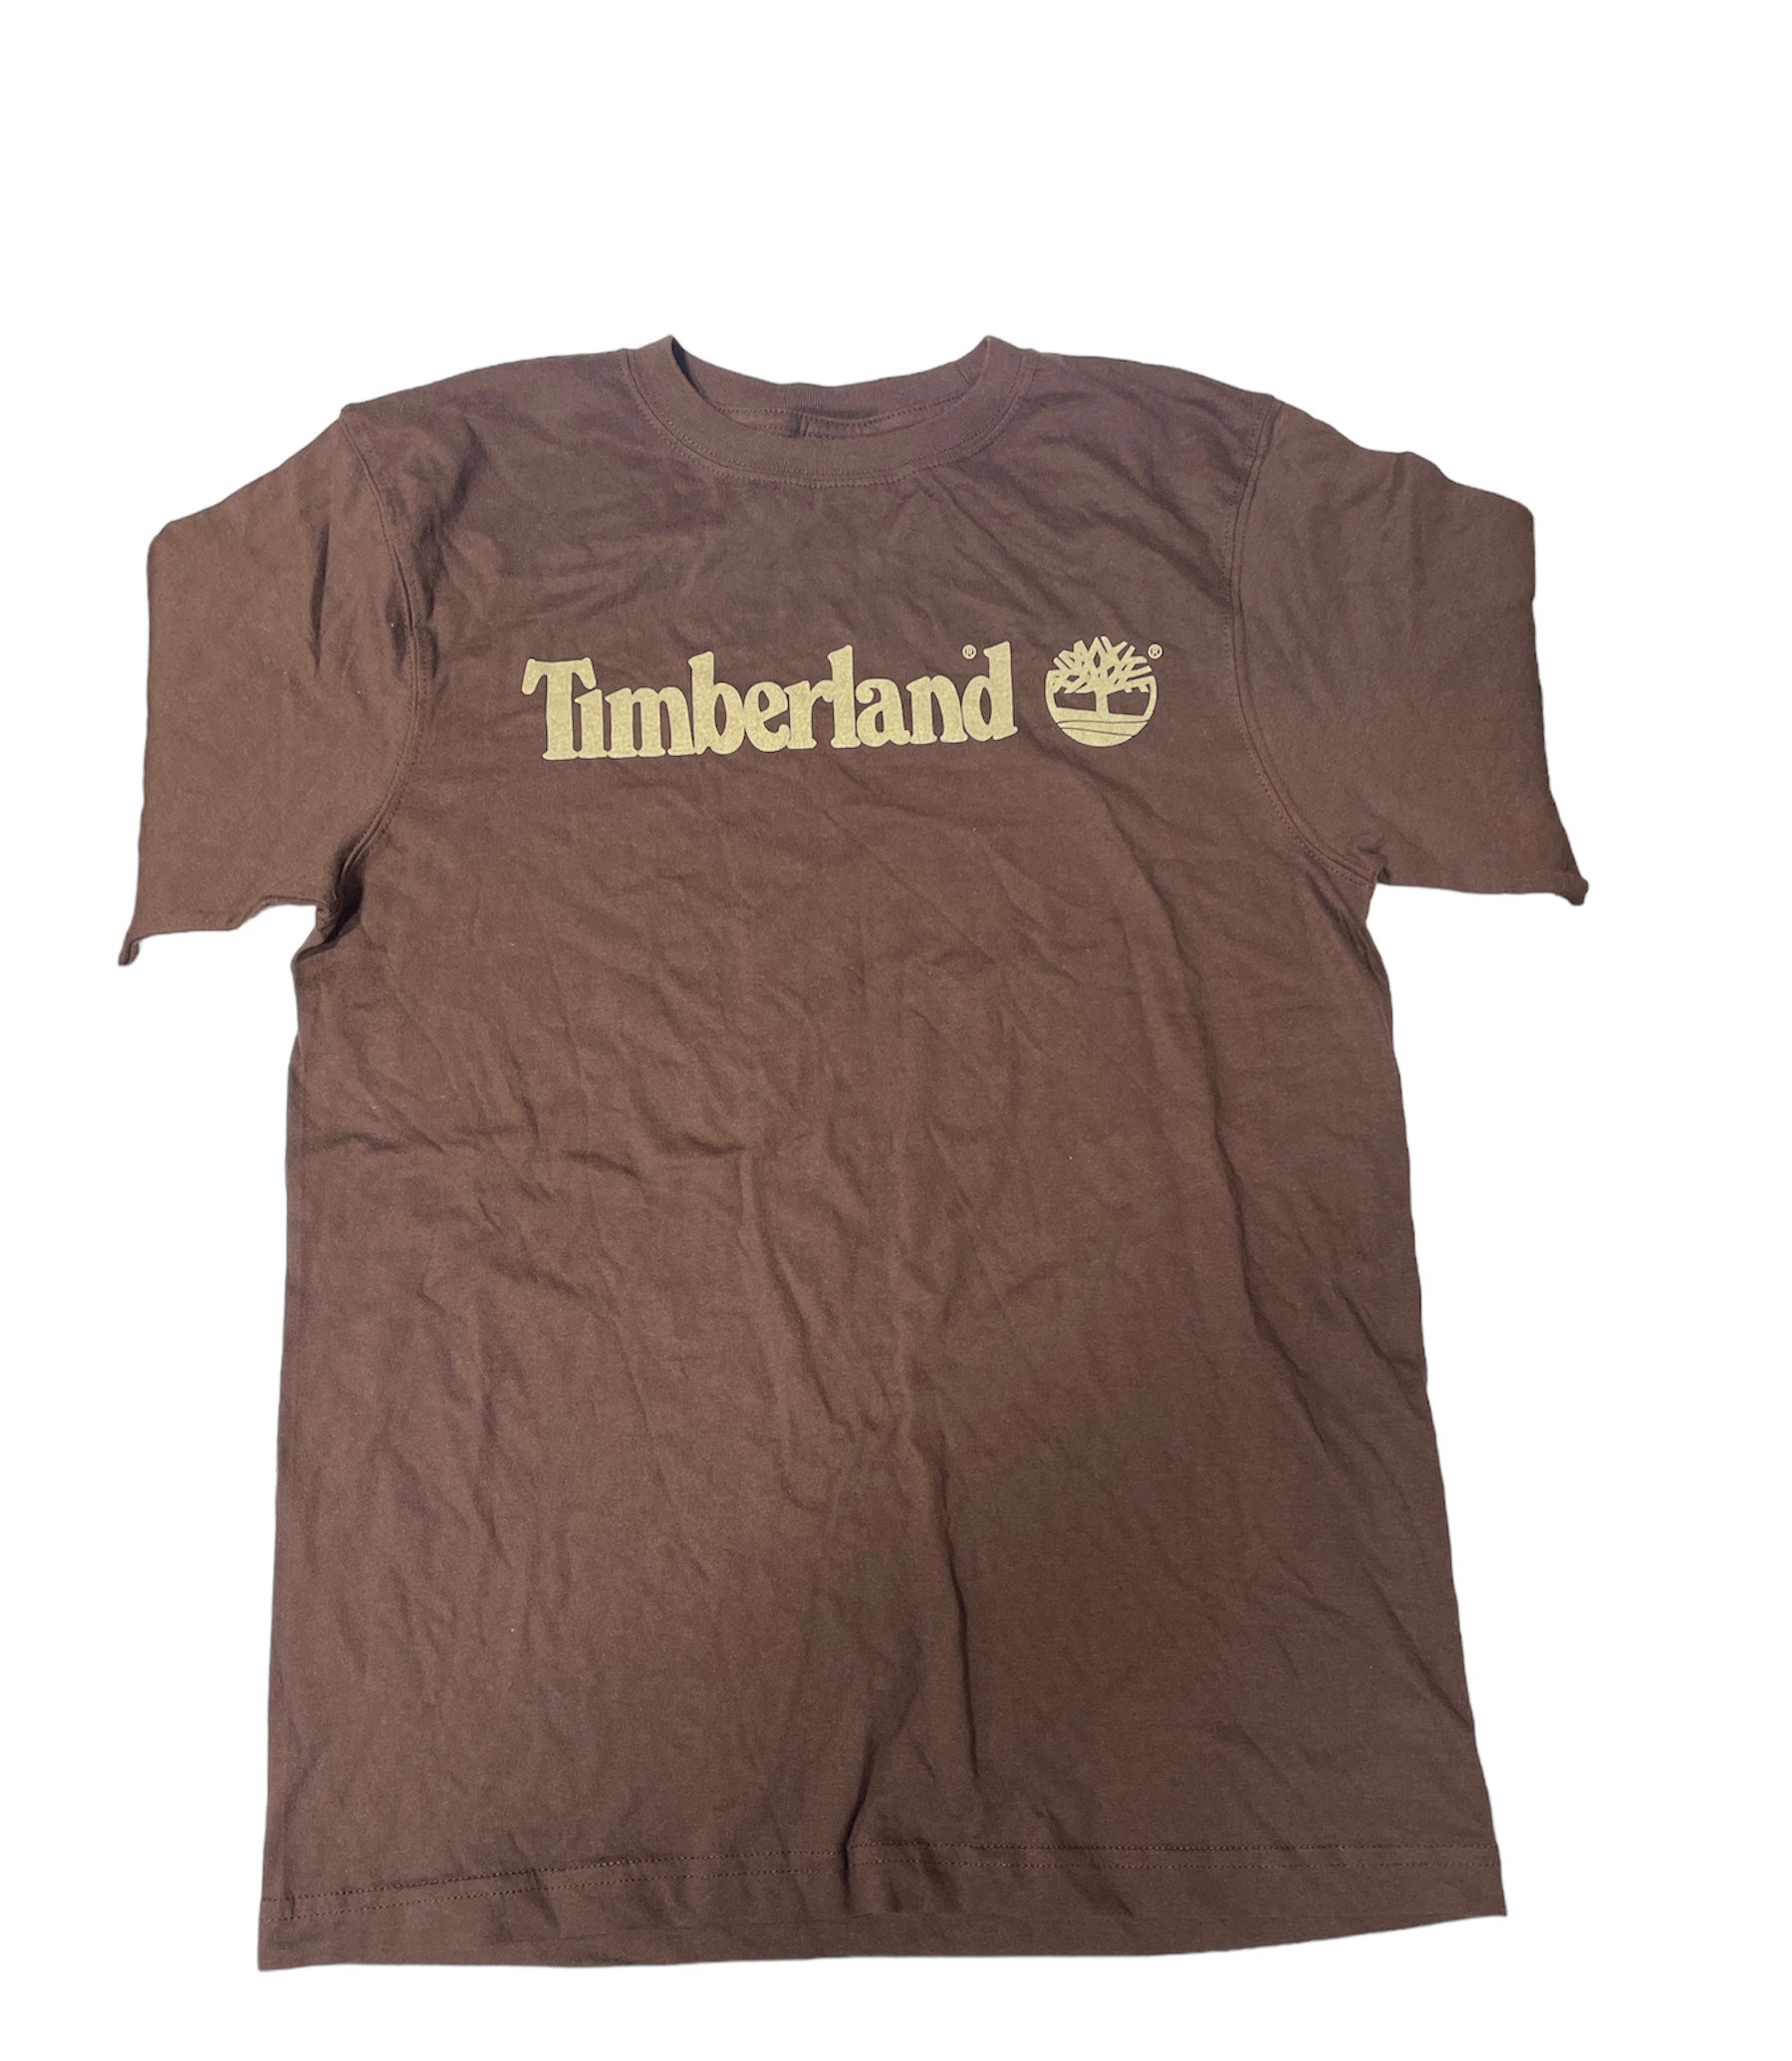 Timberland Womens Graphic Printed T-Shirt